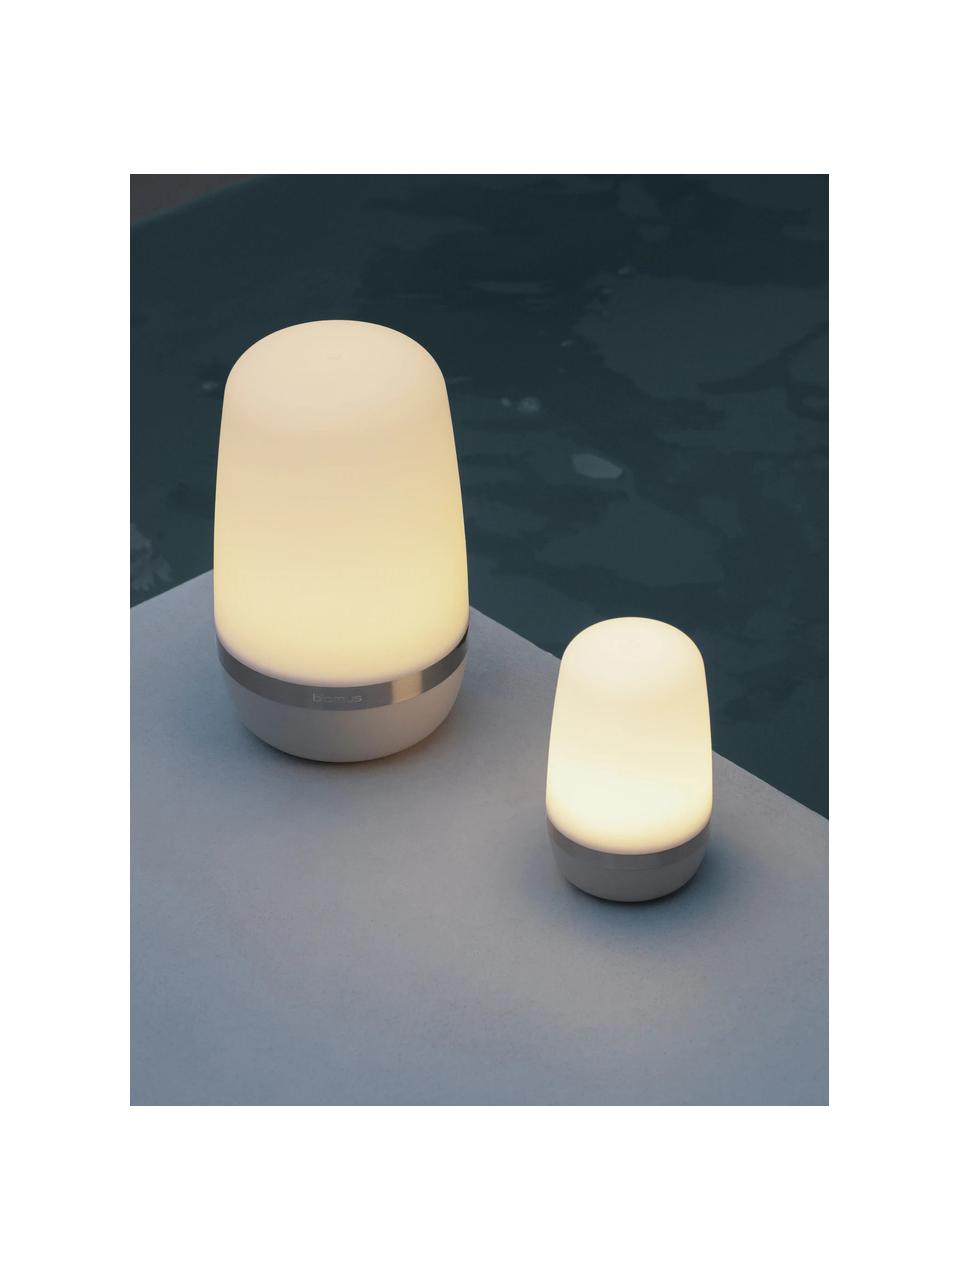 Mobiele LED outdoor tafellamp Spirit, dimbaar, Lamp: kunststof, Decoratie: gecoat metaal, Wit, lichtgrijs, Ø 10 x H 15 cm